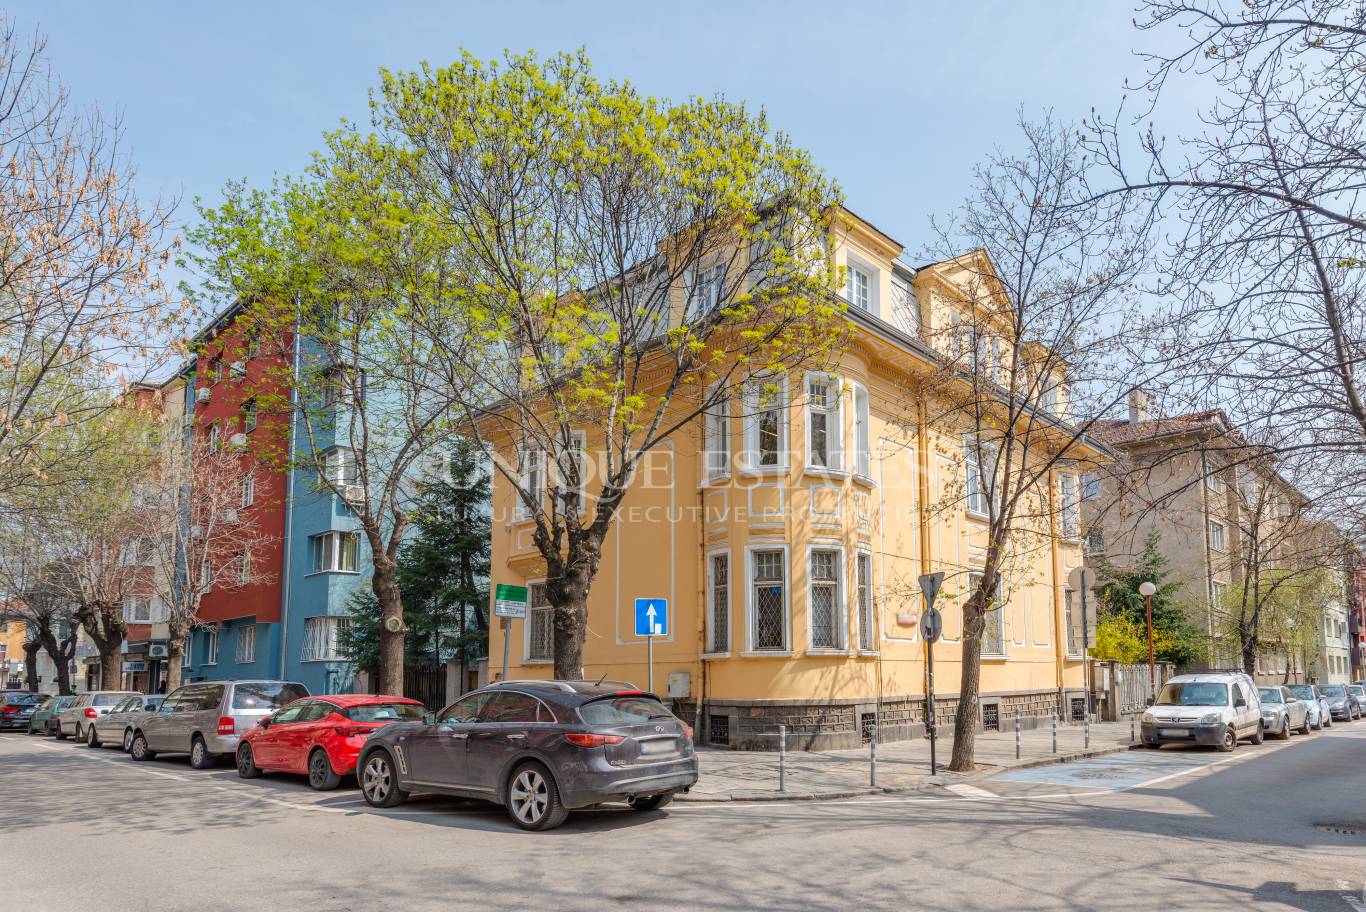 Офис под наем в София, Докторска градина - код на имота: K16661 - image 1